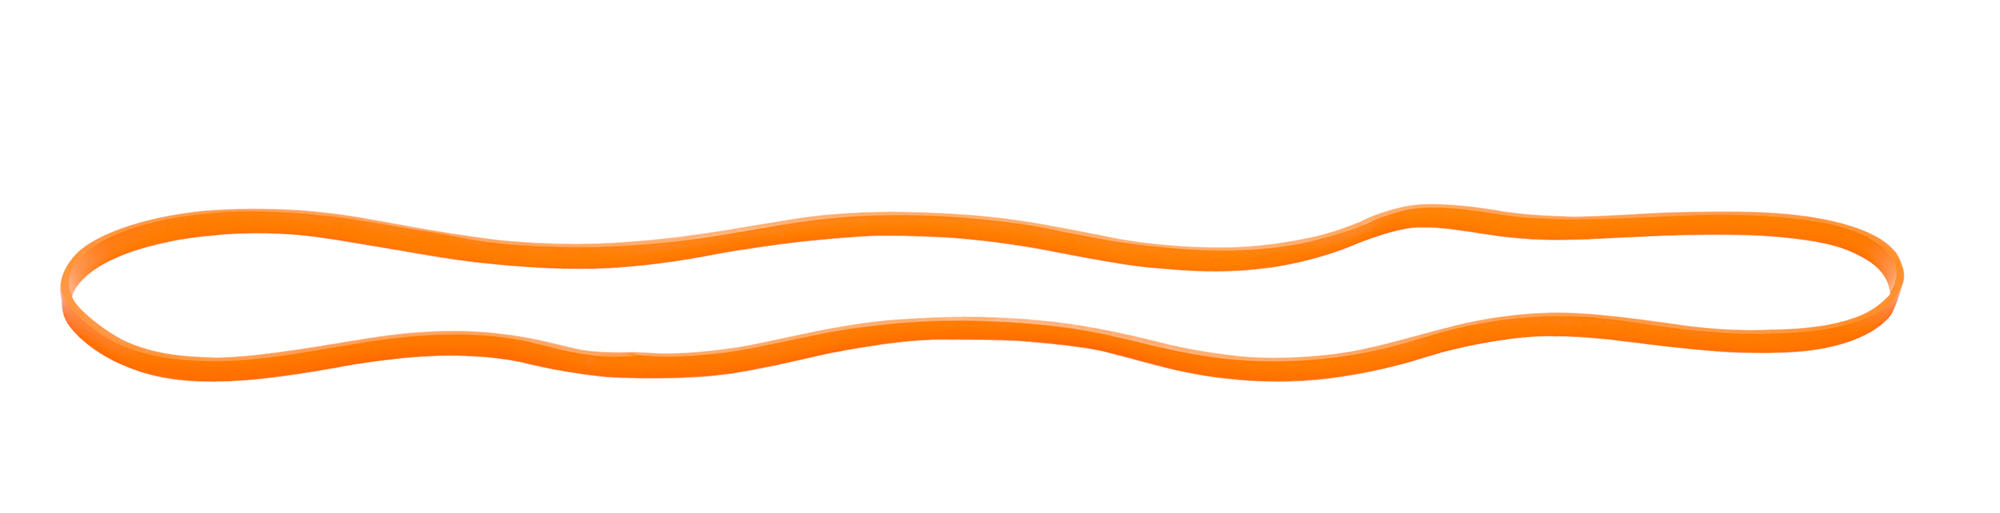 Trendy Sport Rubber Band Zugstärke Extra Leicht in Orange